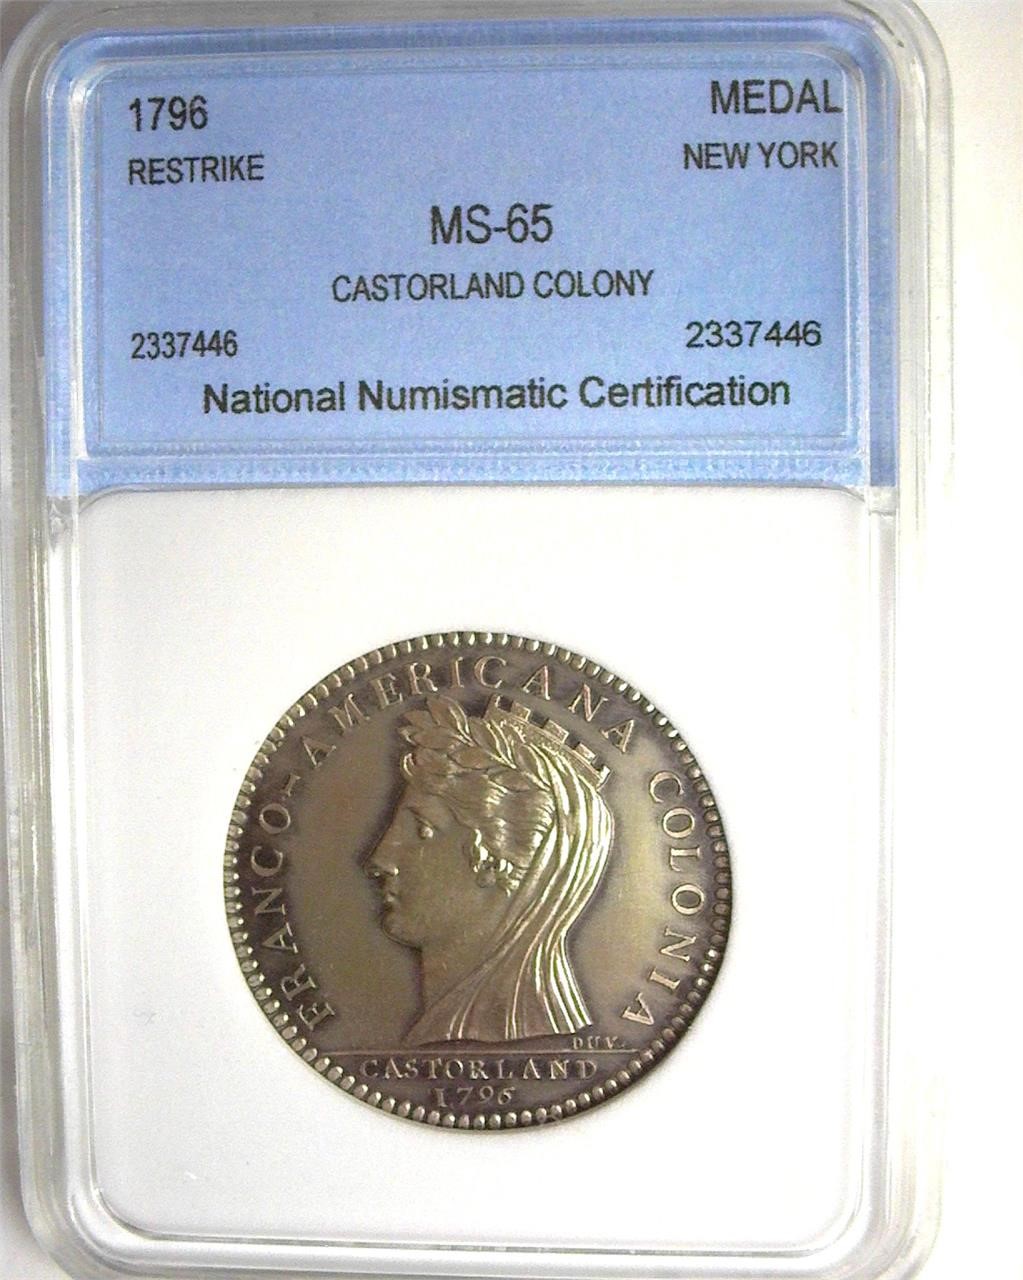 1796 Medal NNC MS65 Restrike Castorland Colony